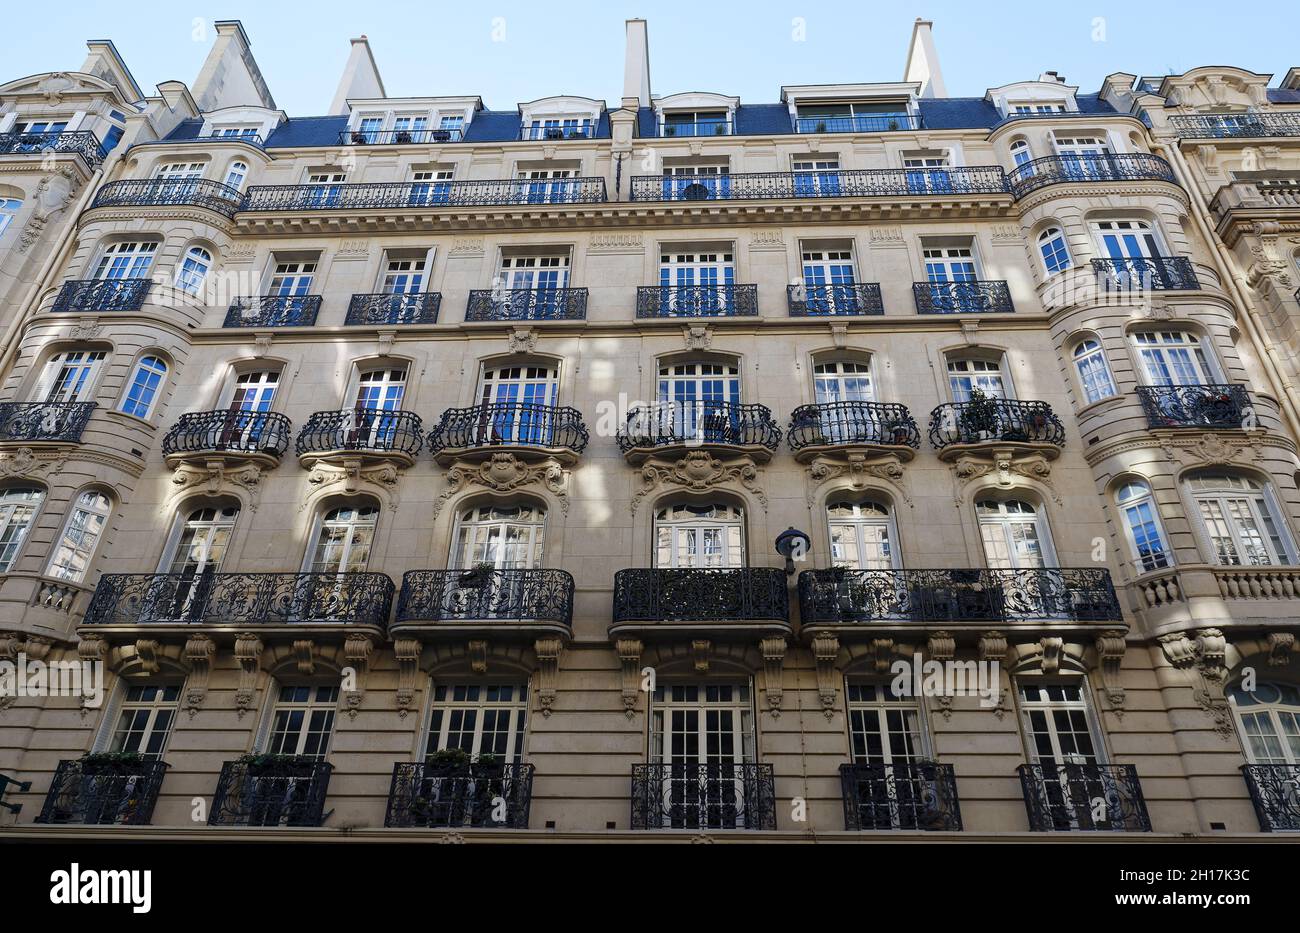 Die Fassade eines traditionellen französischen Hauses mit typischen Balkonen und Fenstern. Paris. Stockfoto